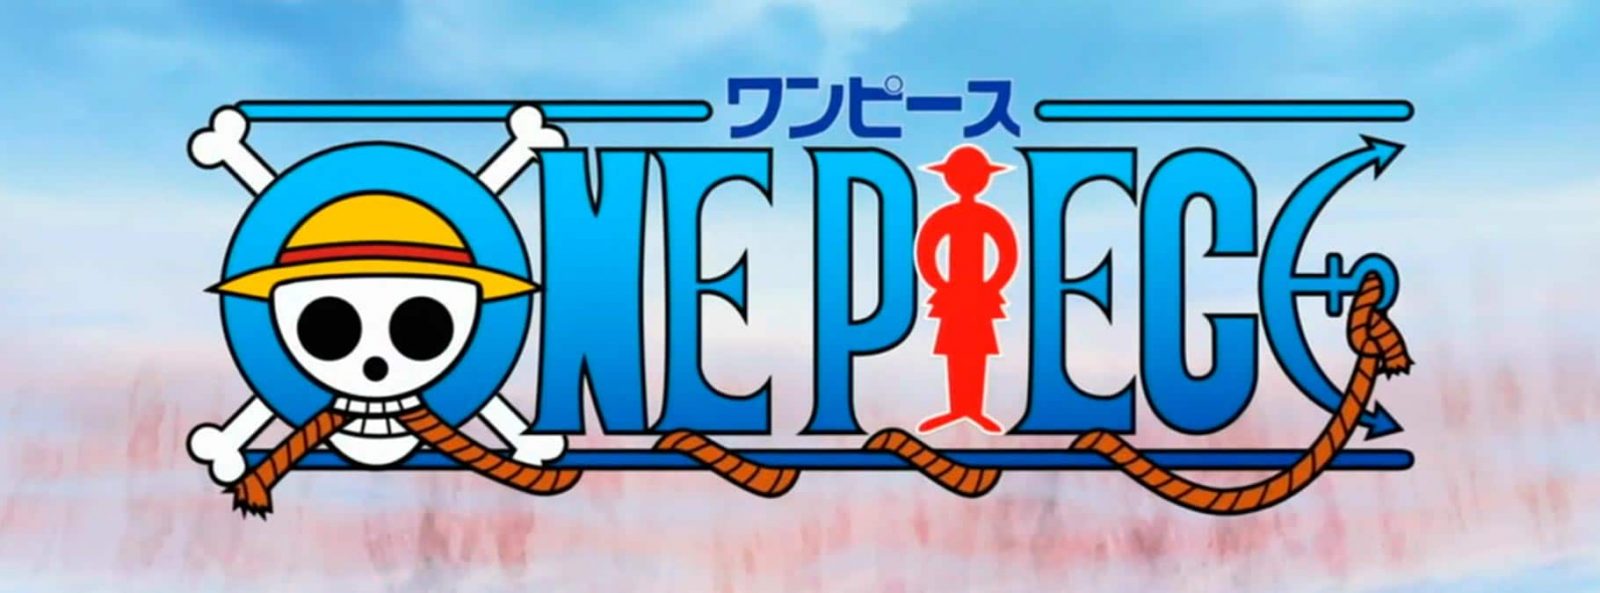 Cuántos capítulos tiene el anime de One Piece? ¿Es el más largo de